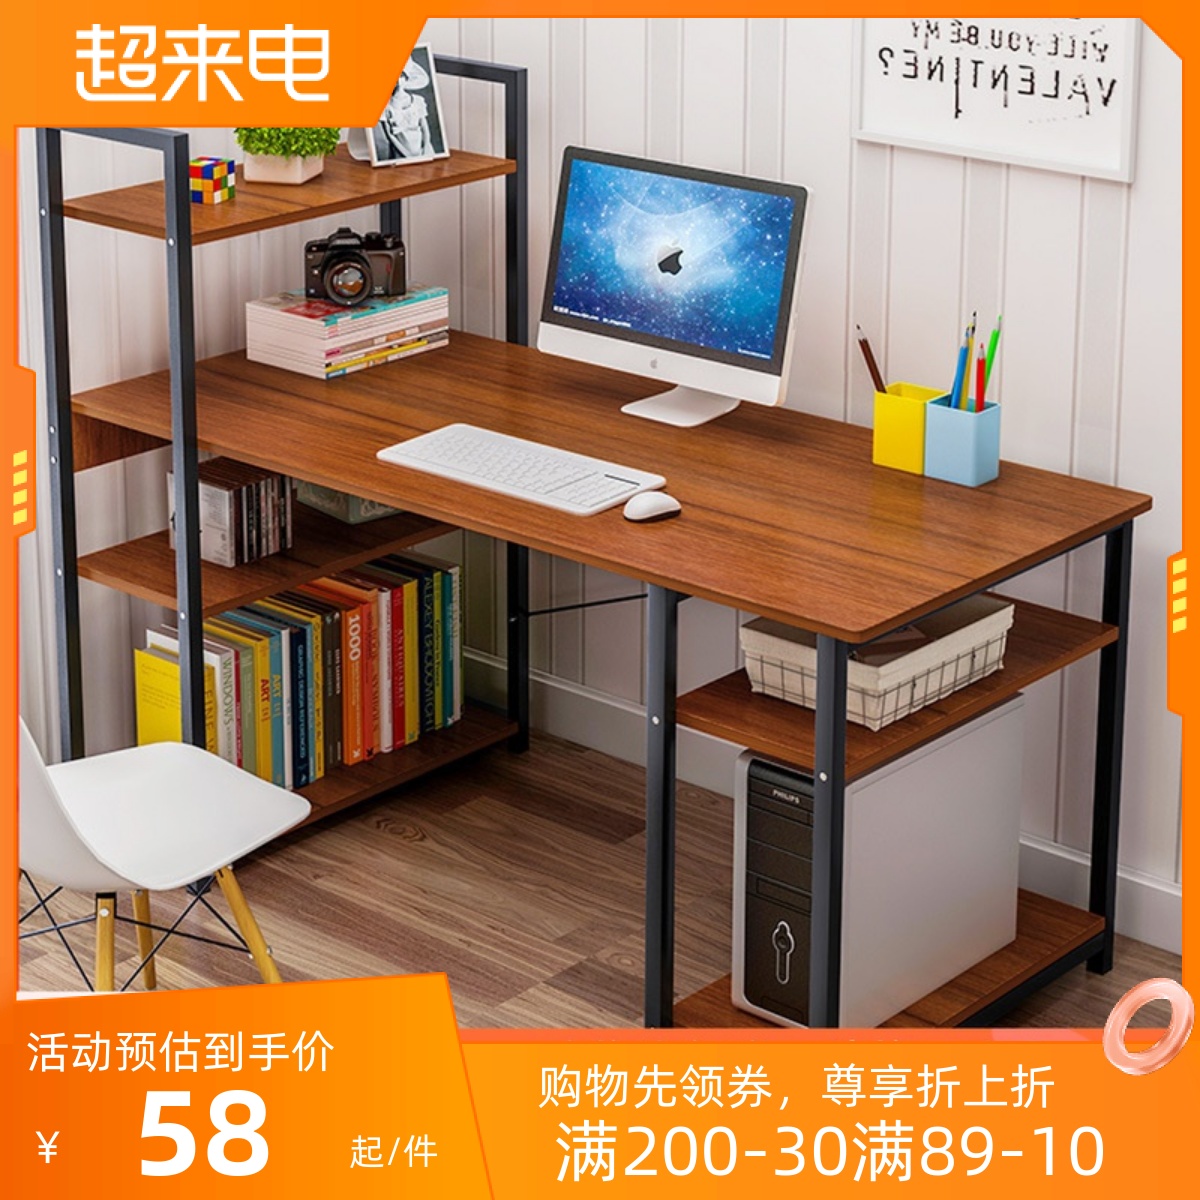 电脑桌台式办公桌家用简易书桌书架组合简约学生写字一体转角桌子